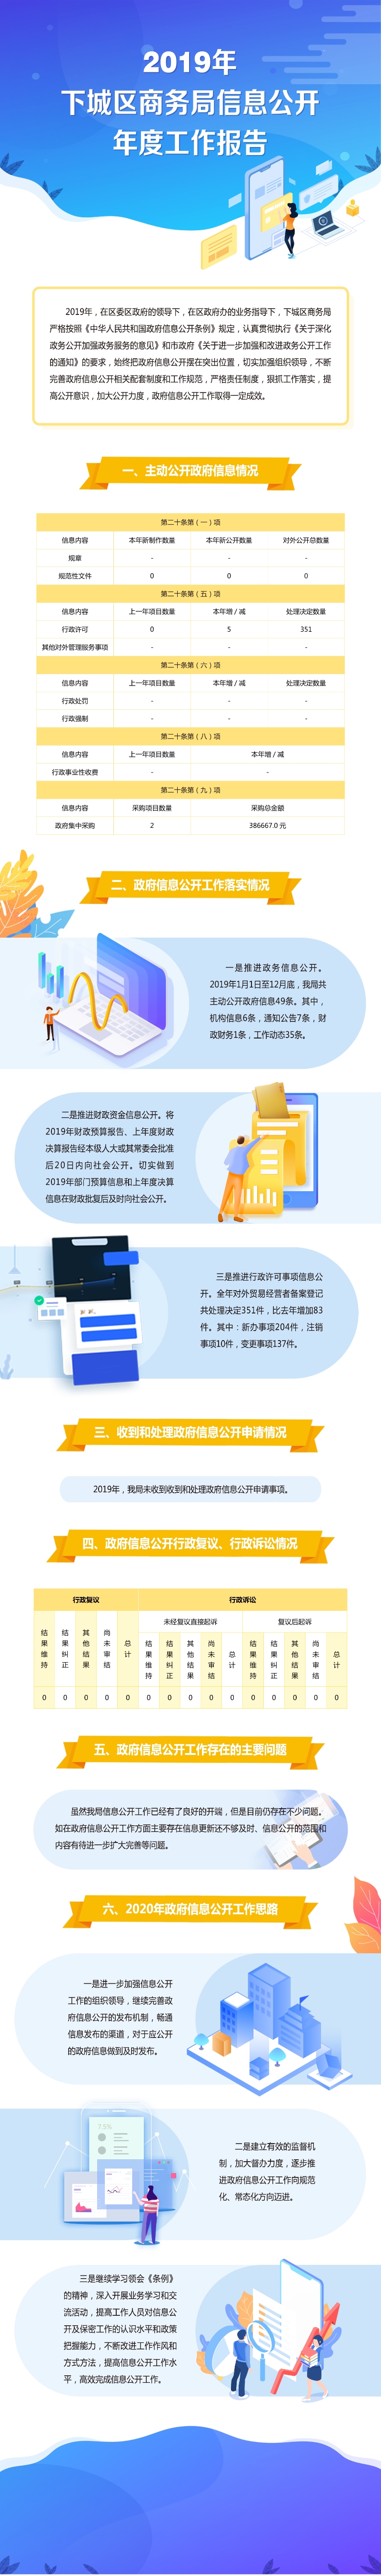 2019年下城区商务局信息公开年度工作报告(2).jpg